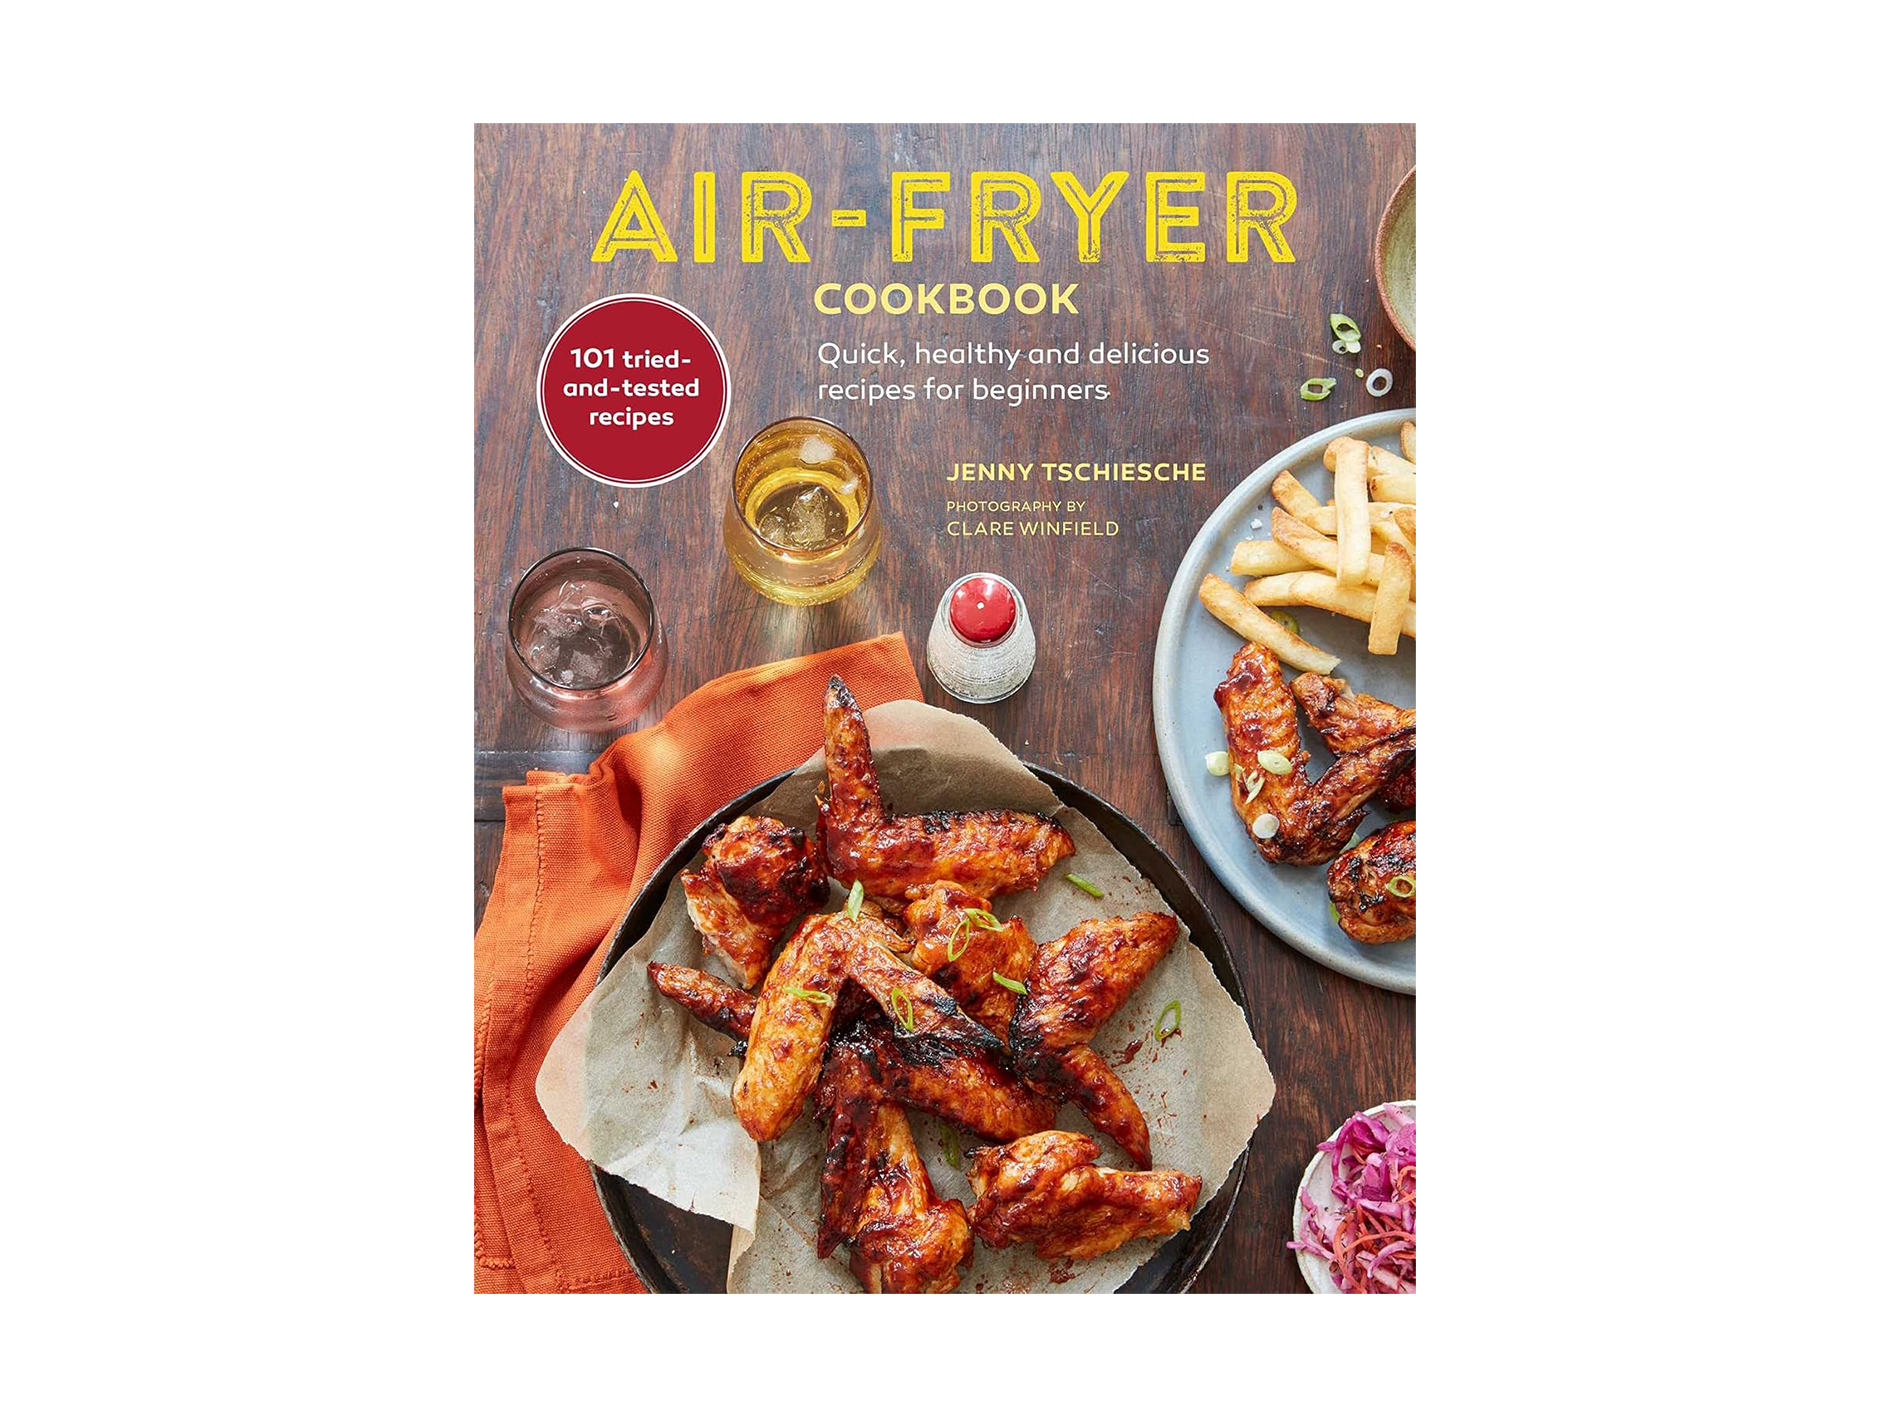 air fryer cookbook